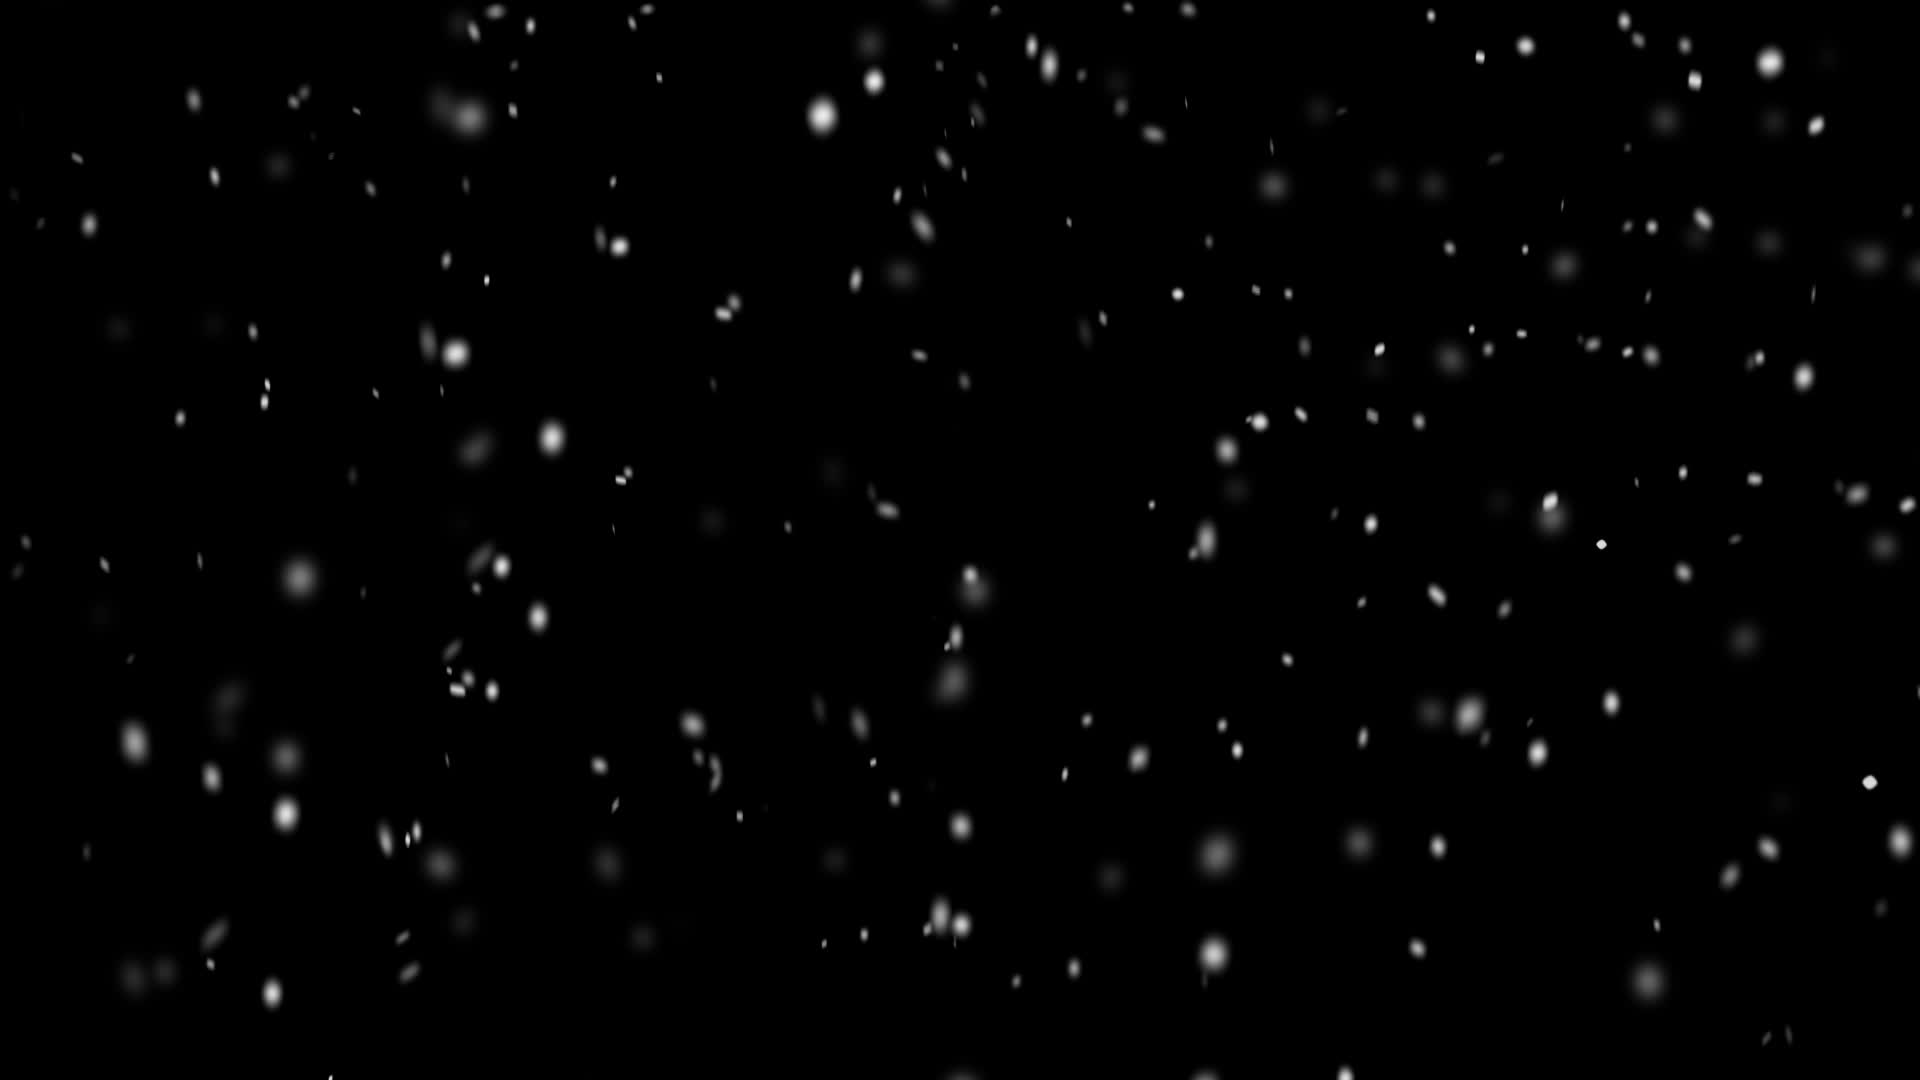 Cảm nhận mùa đông tuyết rơi trên nền đen trong hình ảnh đầy ấn tượng. Nét đậm chất nghệ thuật, một khoảnh khắc đẹp tuyệt vời để ngắm cảnh tuyết rơi. Quang cảnh tuyệt đẹp sẽ đưa bạn vào một cảm giác thoải mái và thư giãn.